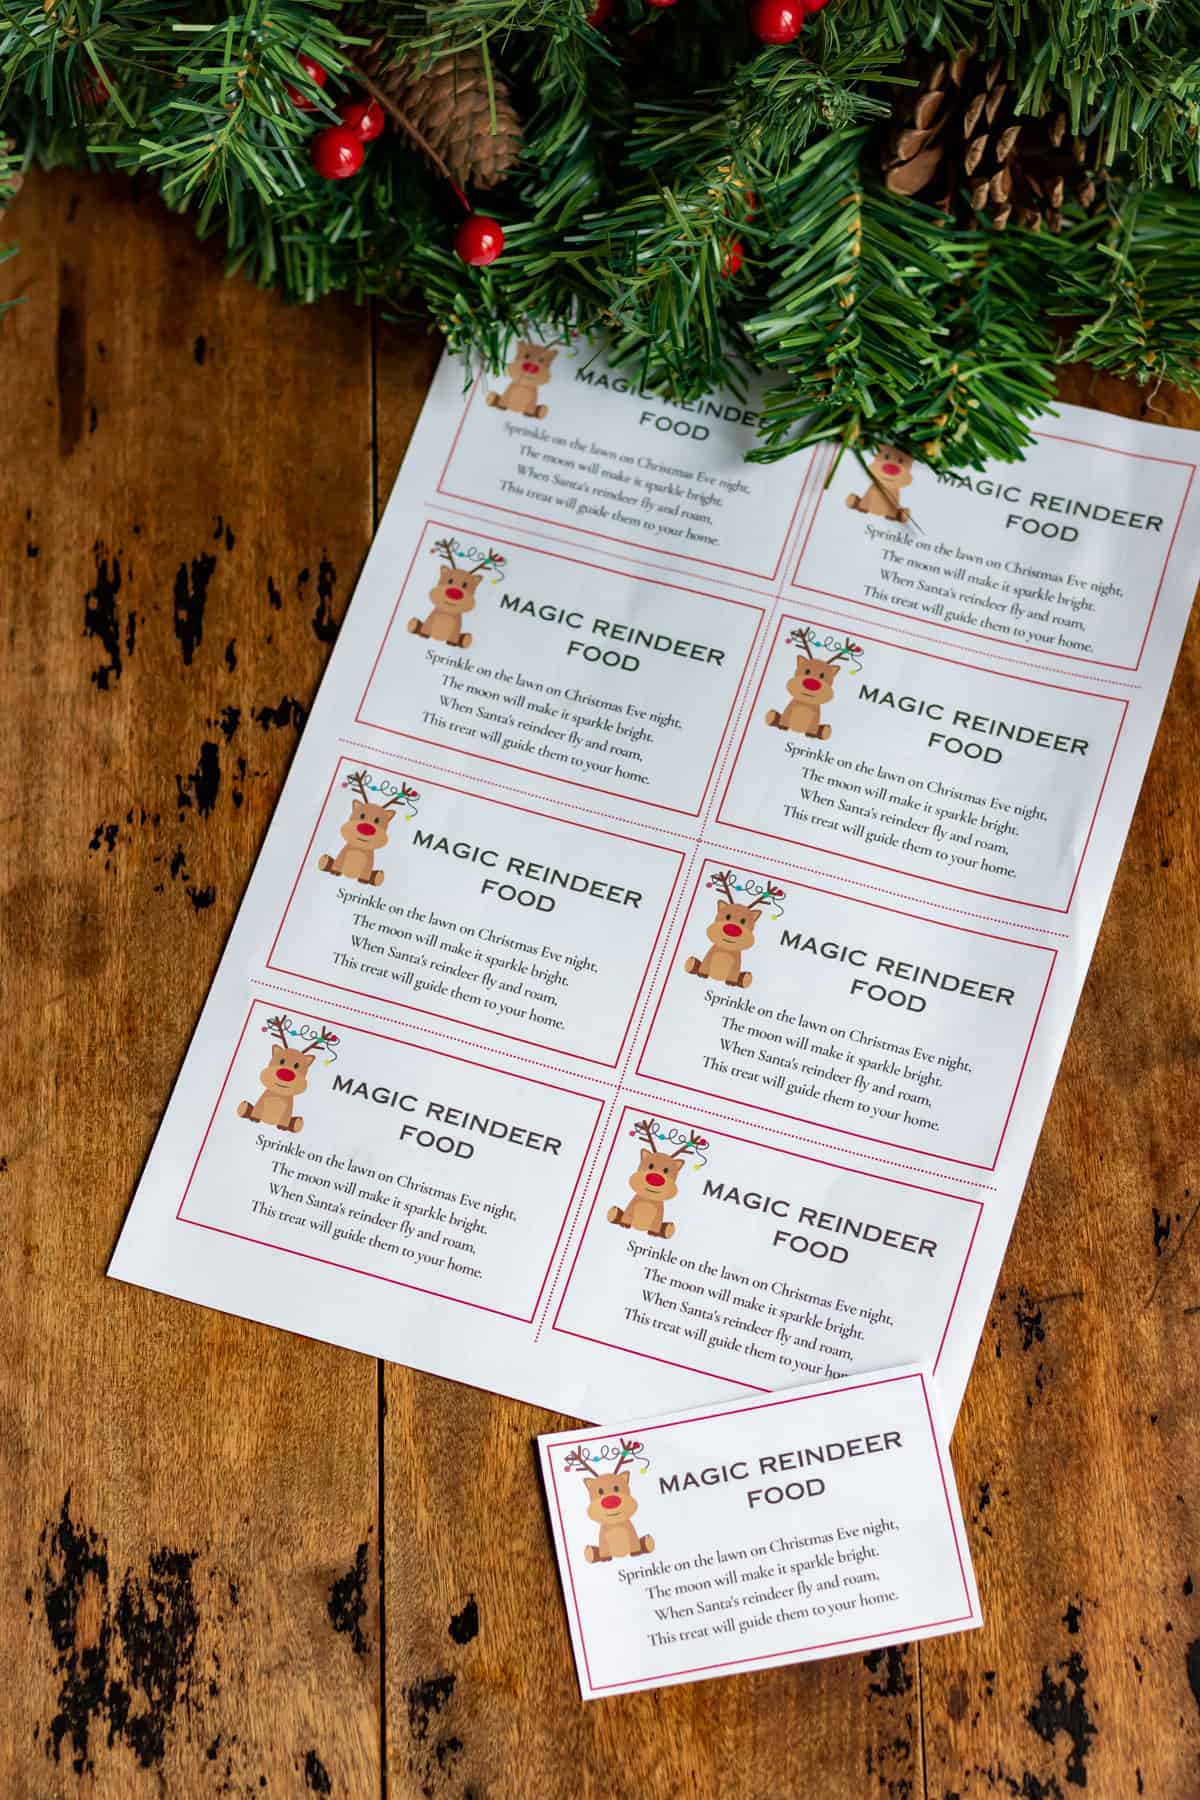 Printable tags of a Magic Reindeer Food poem.